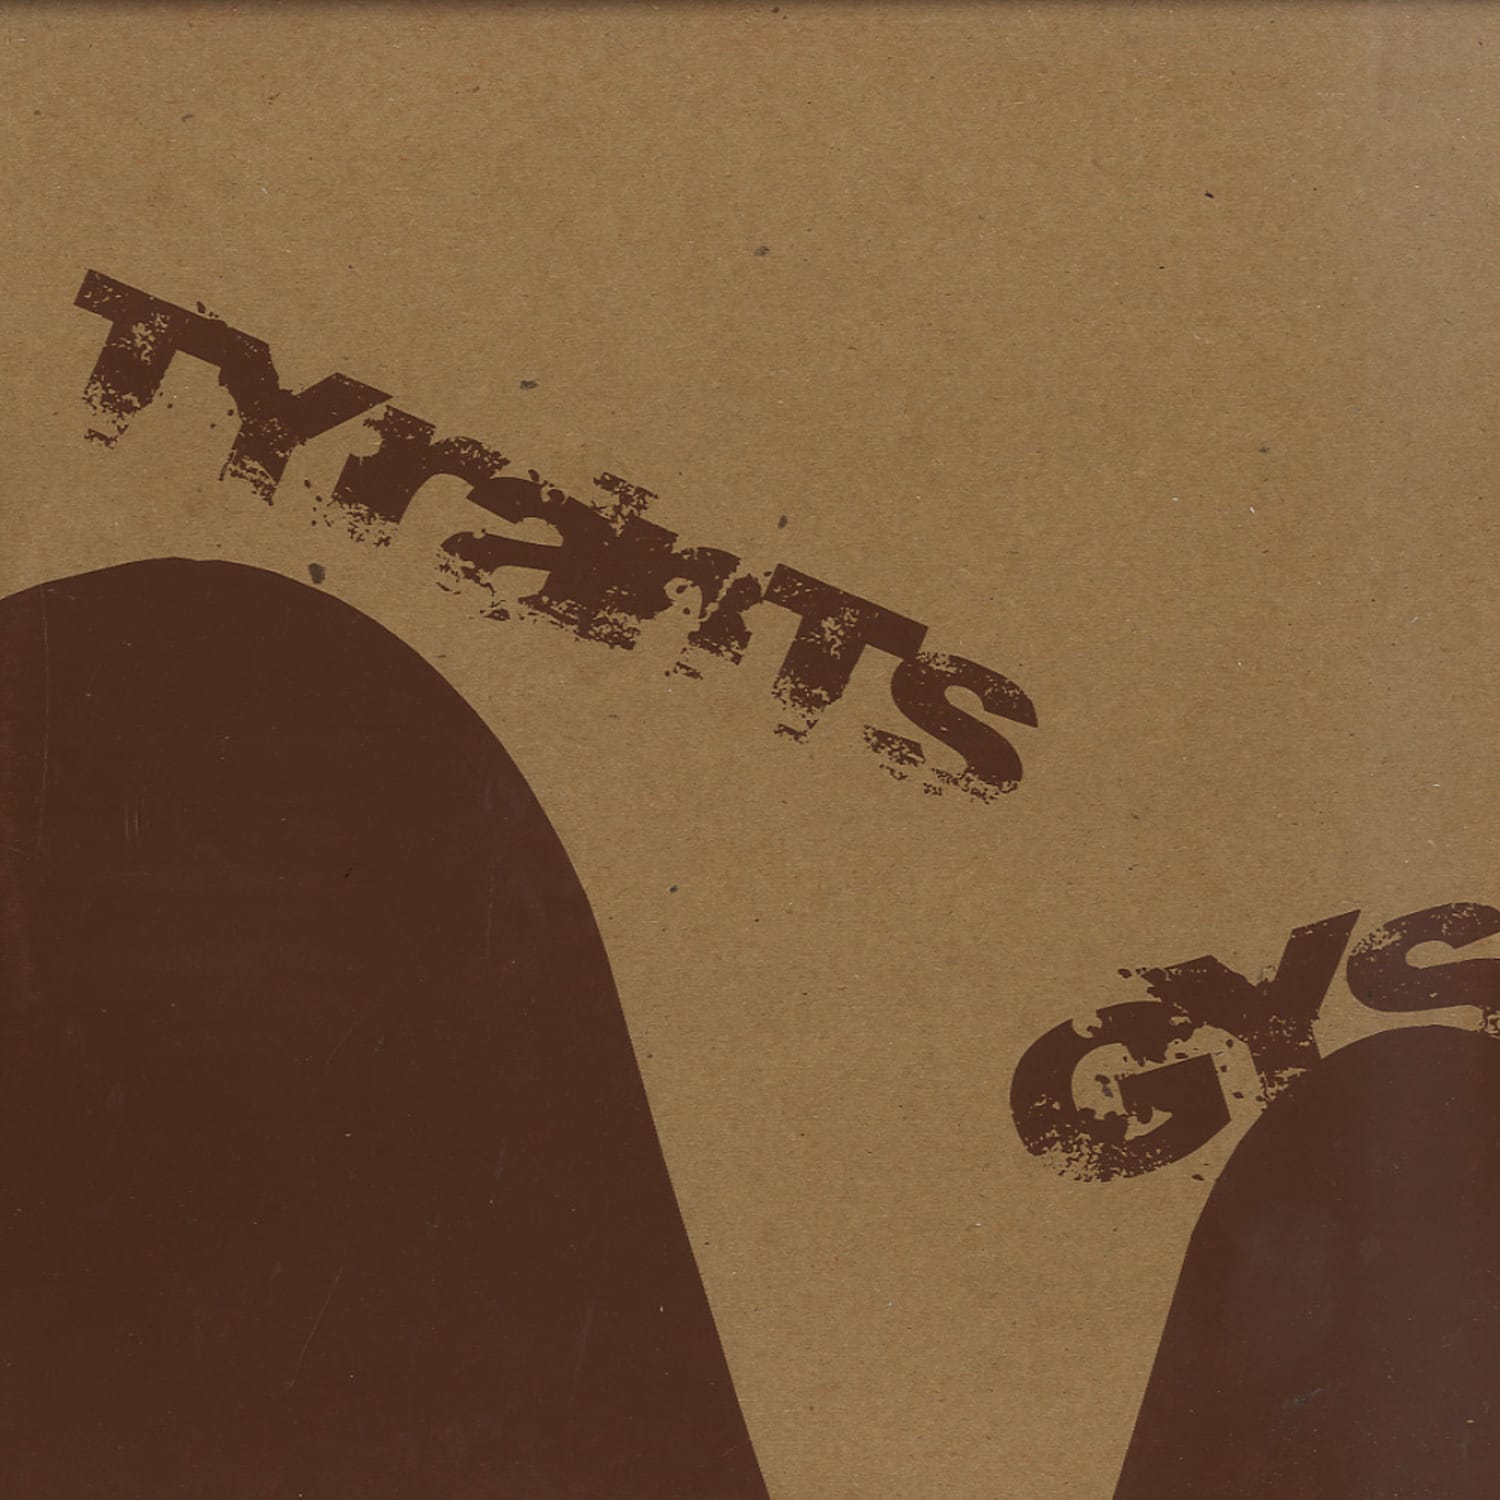 Gys - TYRANTS